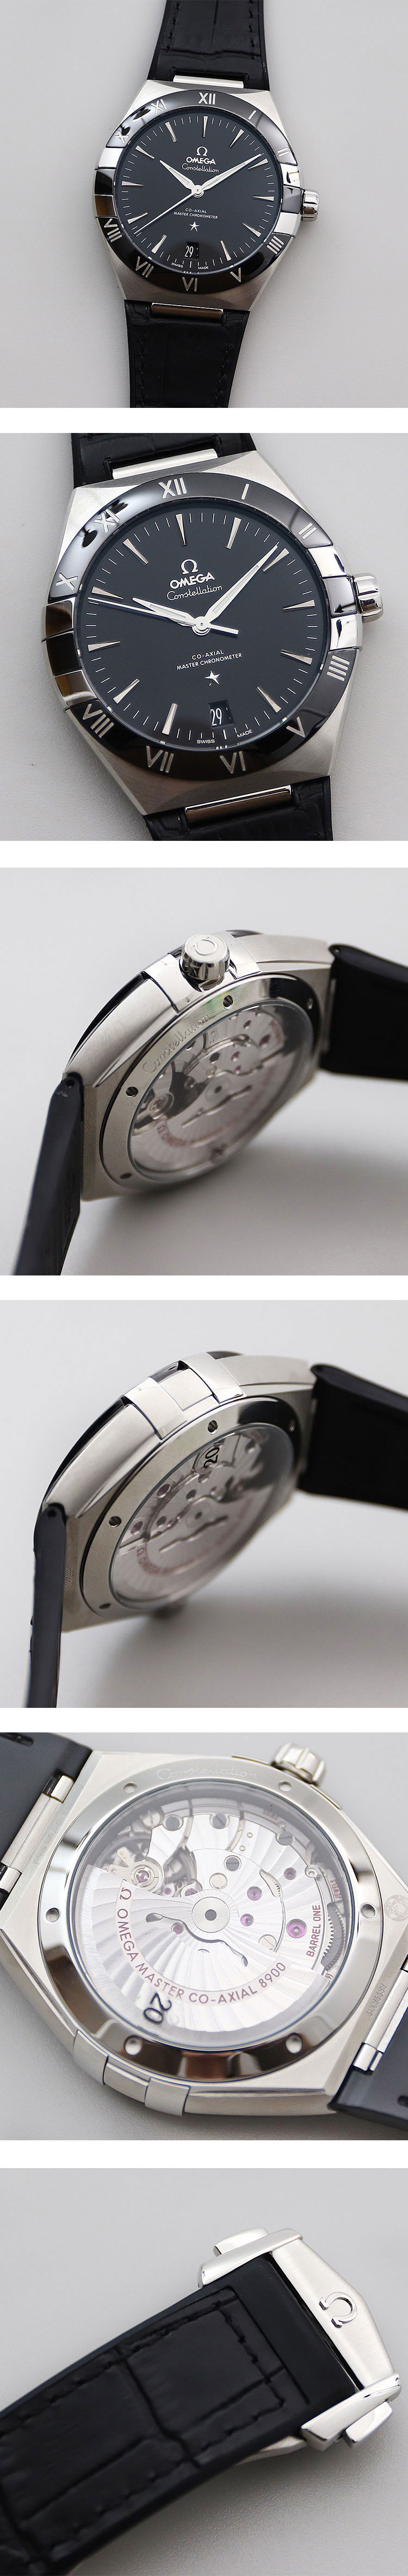 メンズ腕時計オメガ コンステレーション 131.33.41.21.01.001(SBF製)